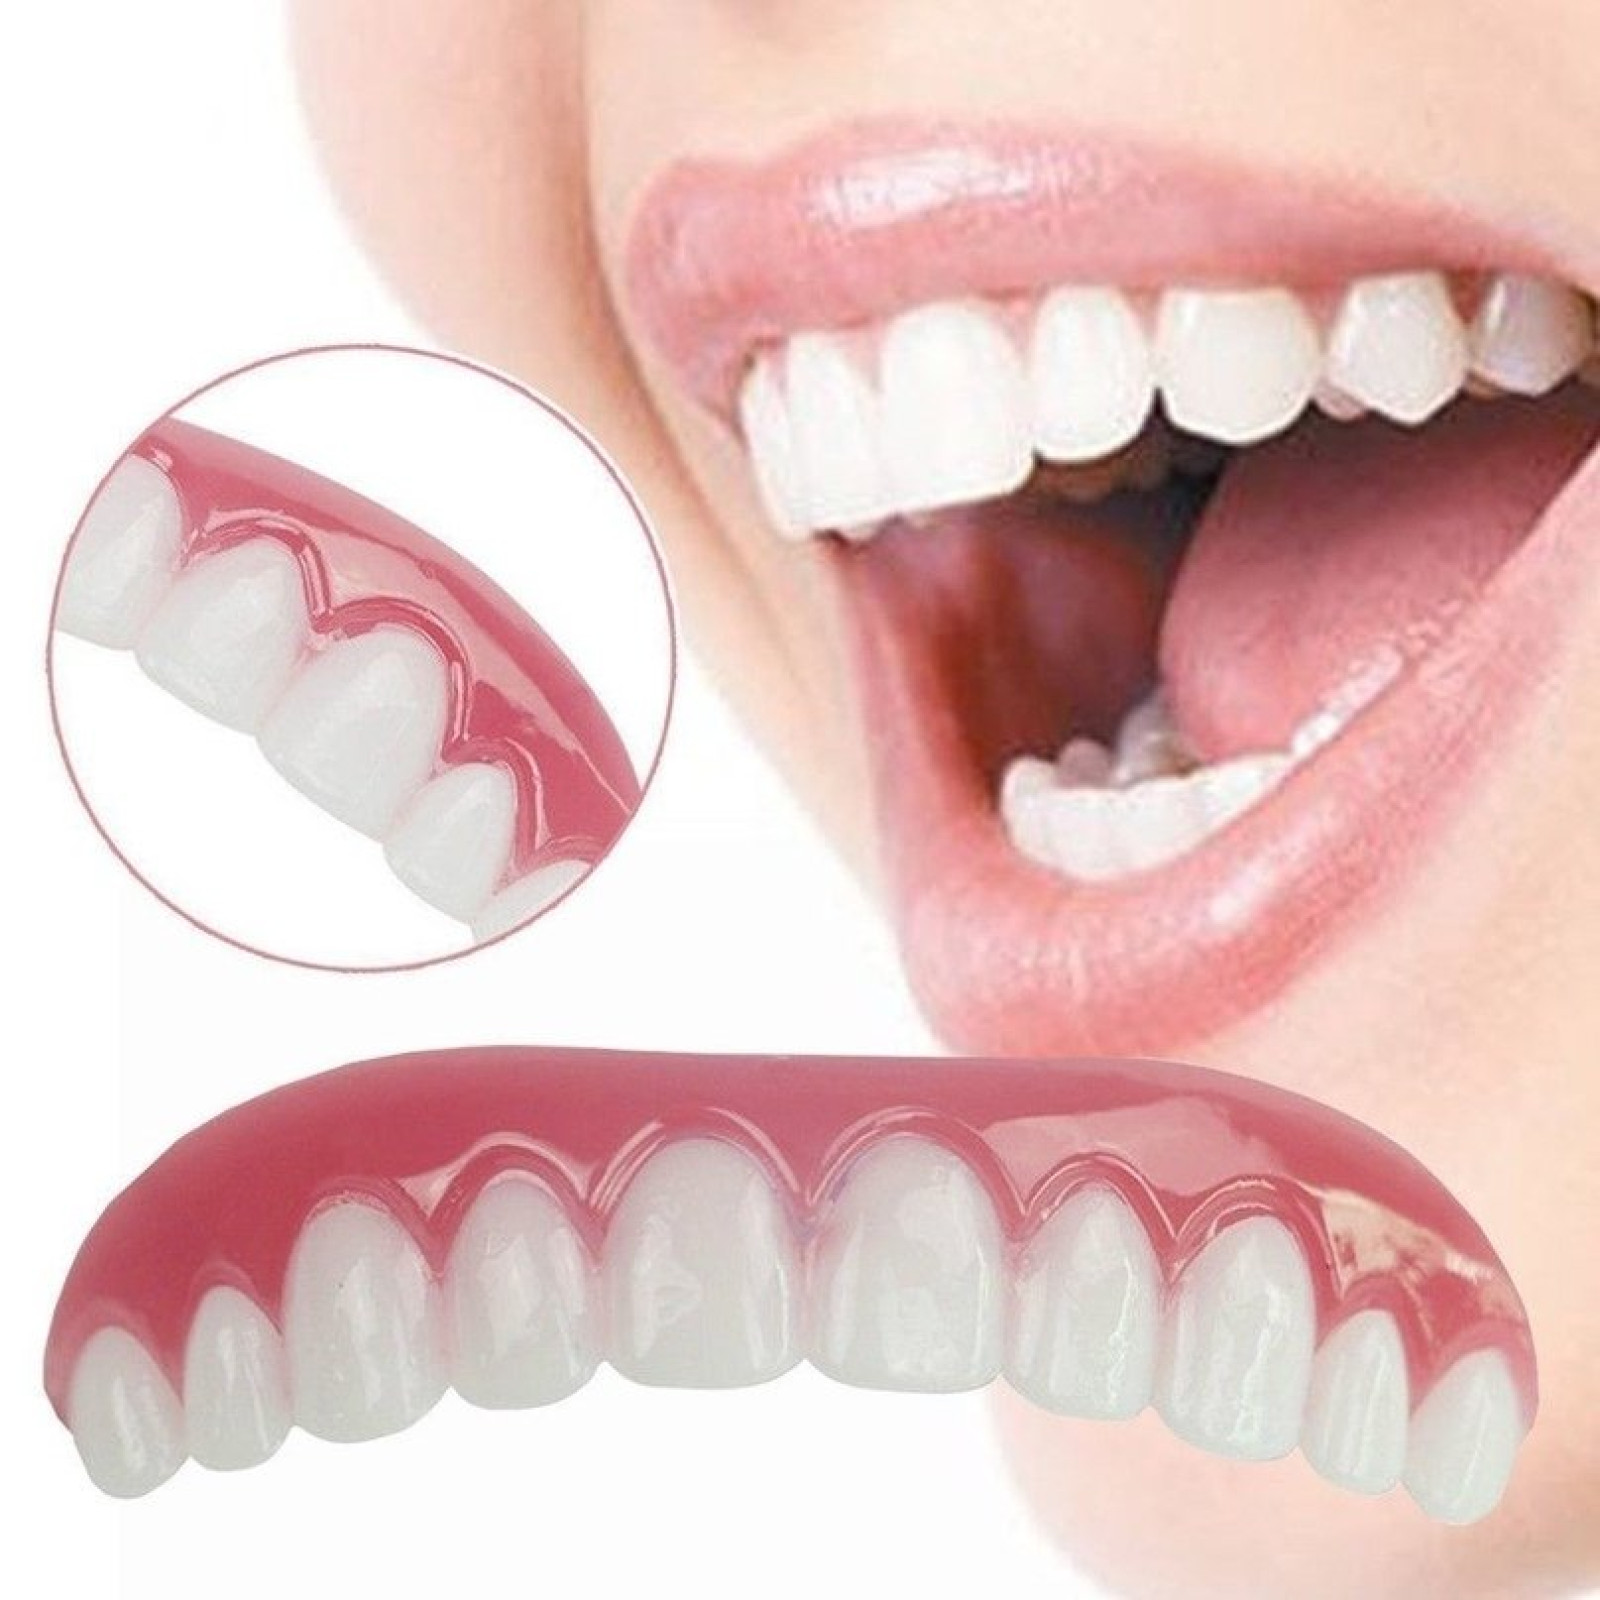 Виниры каппы для зубов Perfect Smile Veneers 131661